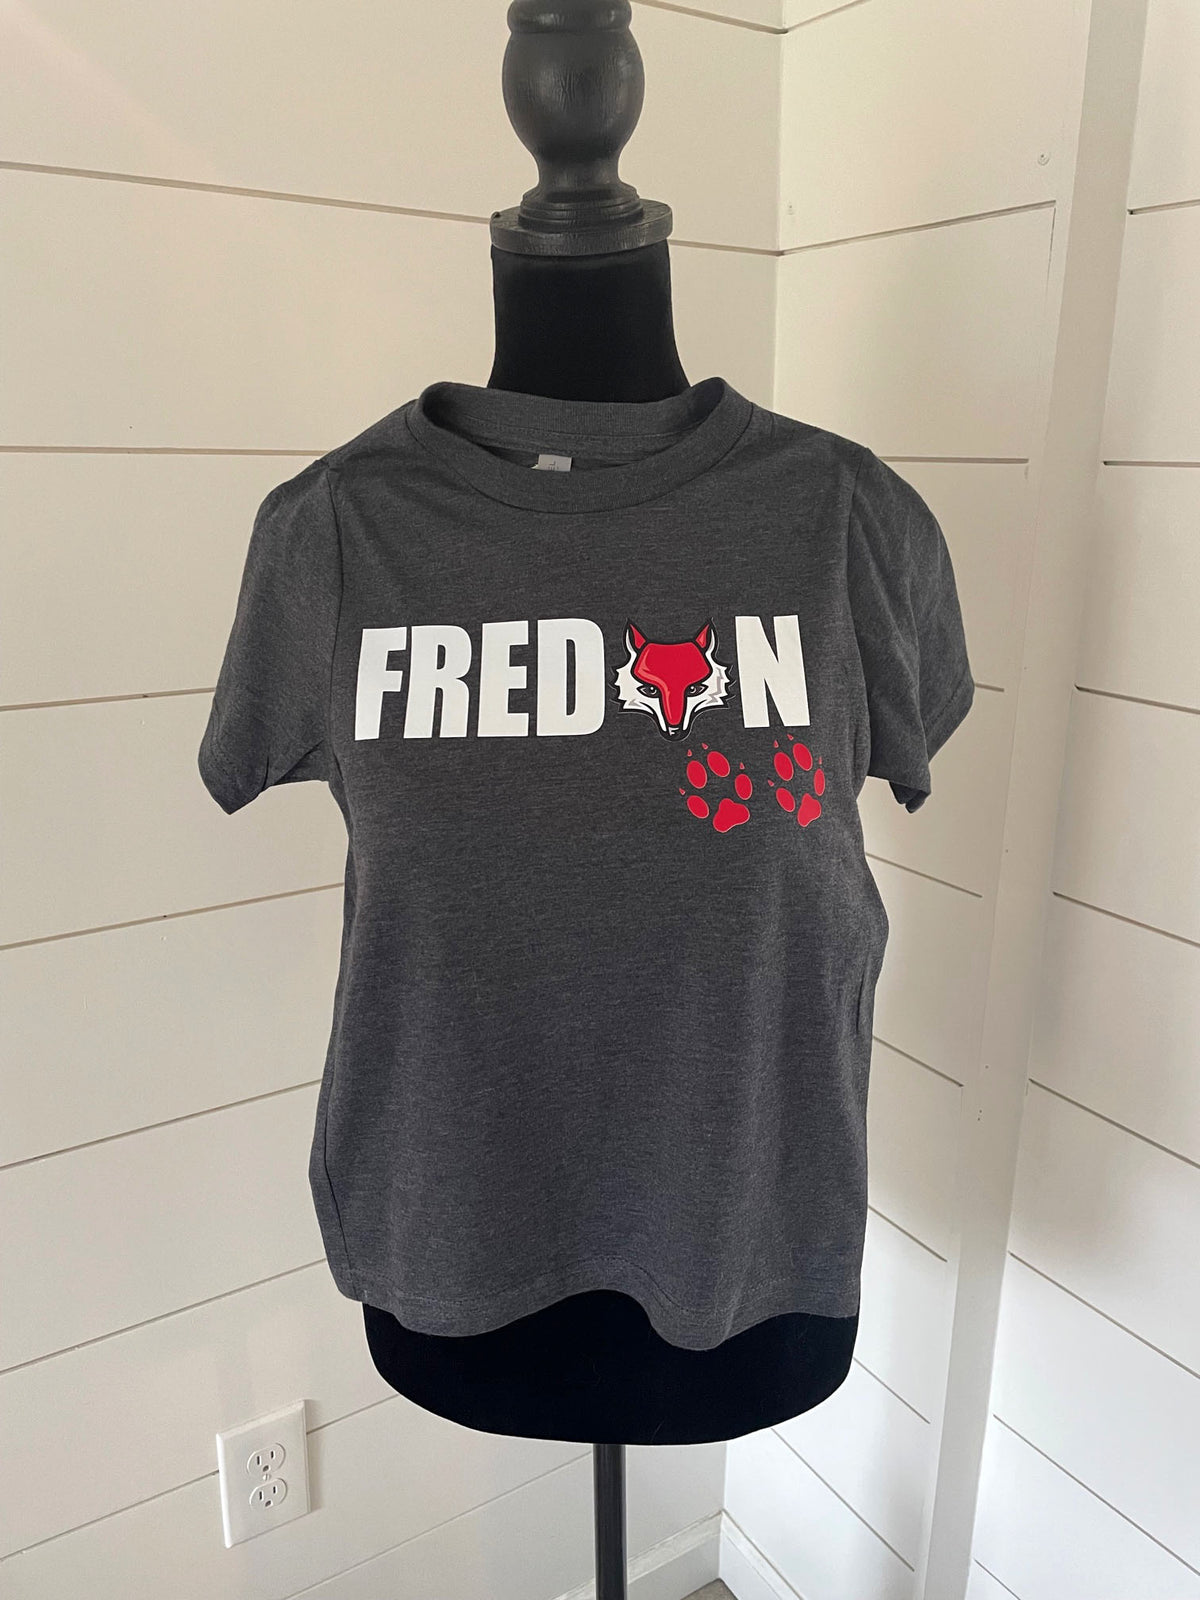 Fredon T-Shirt, sale